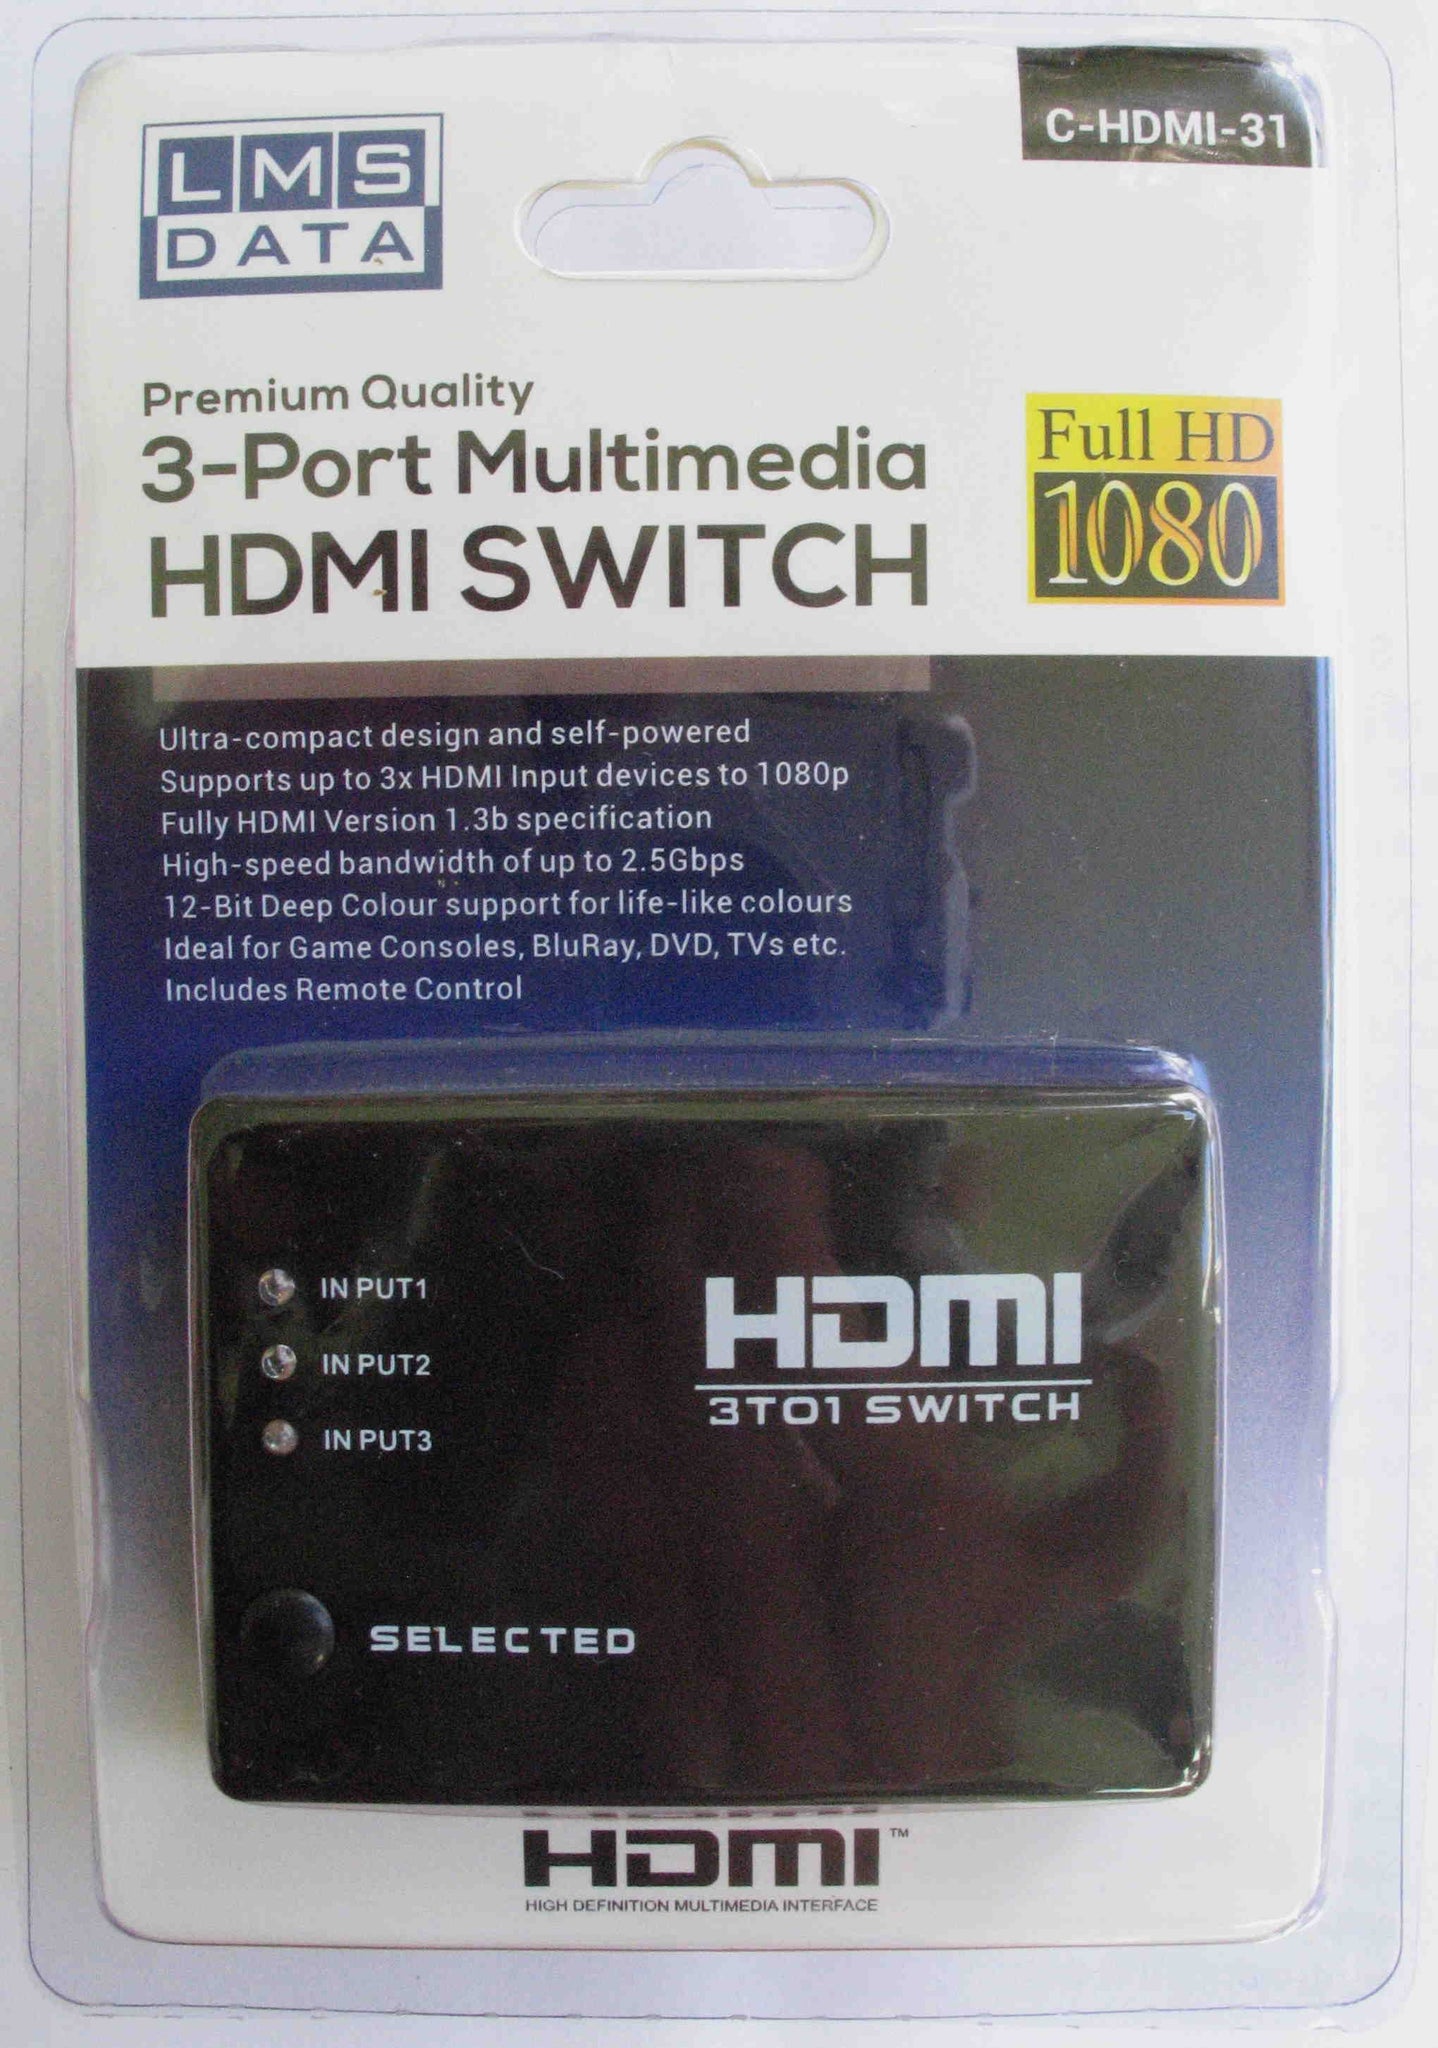 Auto Sensing 3 Port HDMI Splitter with Remote Control